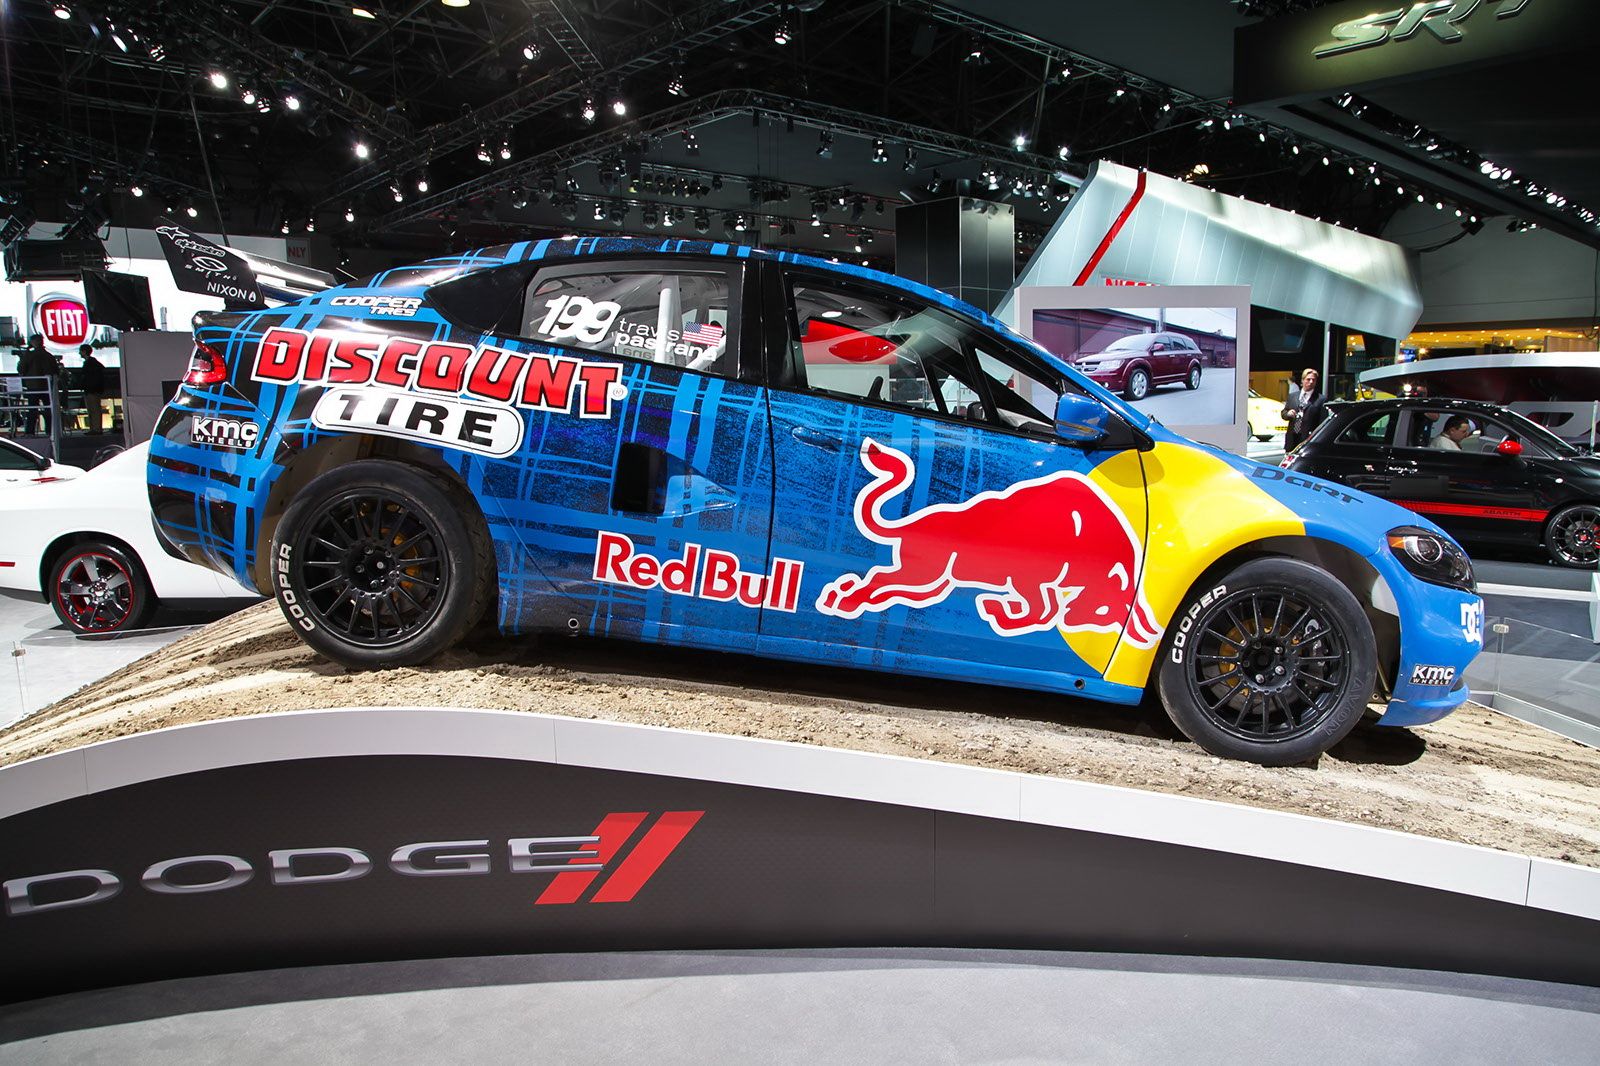 2012 Dodge Dart Global Rally Championship Rally Car